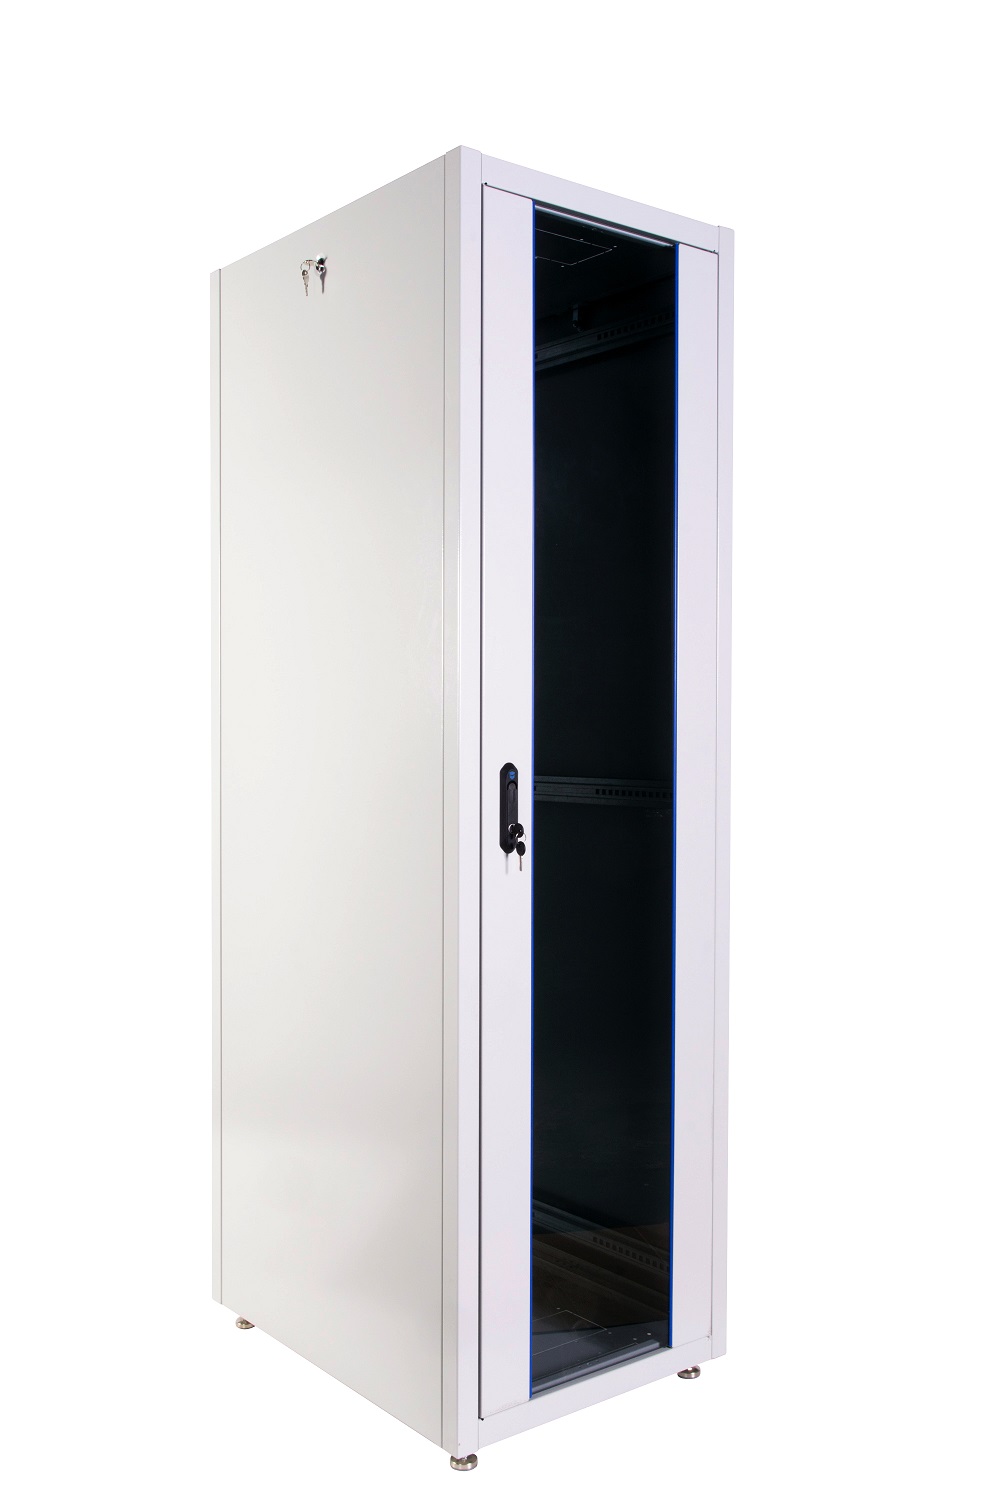  Купить Шкаф телекоммуникационный напольный ЭКОНОМ 42U (600 × 800) дверь стекло, дверь металл